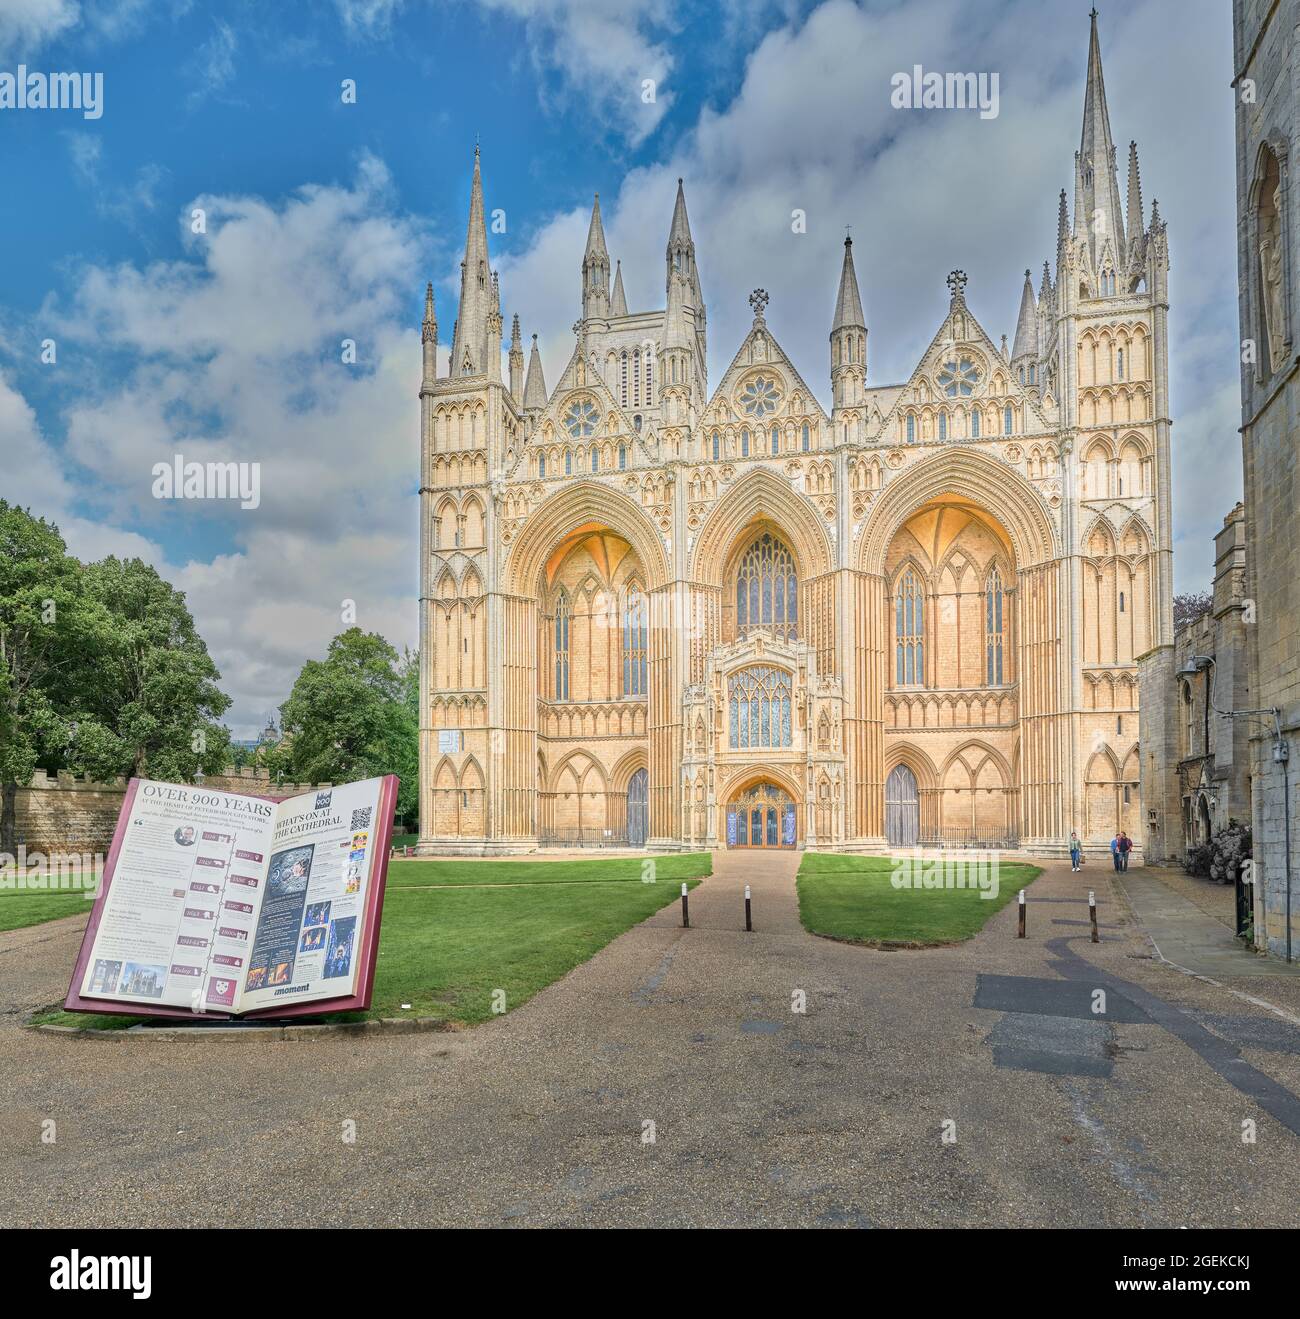 Un libro di storia sulla faccia occidentale del XIII secolo della cattedrale cristiana medievale di Peterborough, Inghilterra. Foto Stock